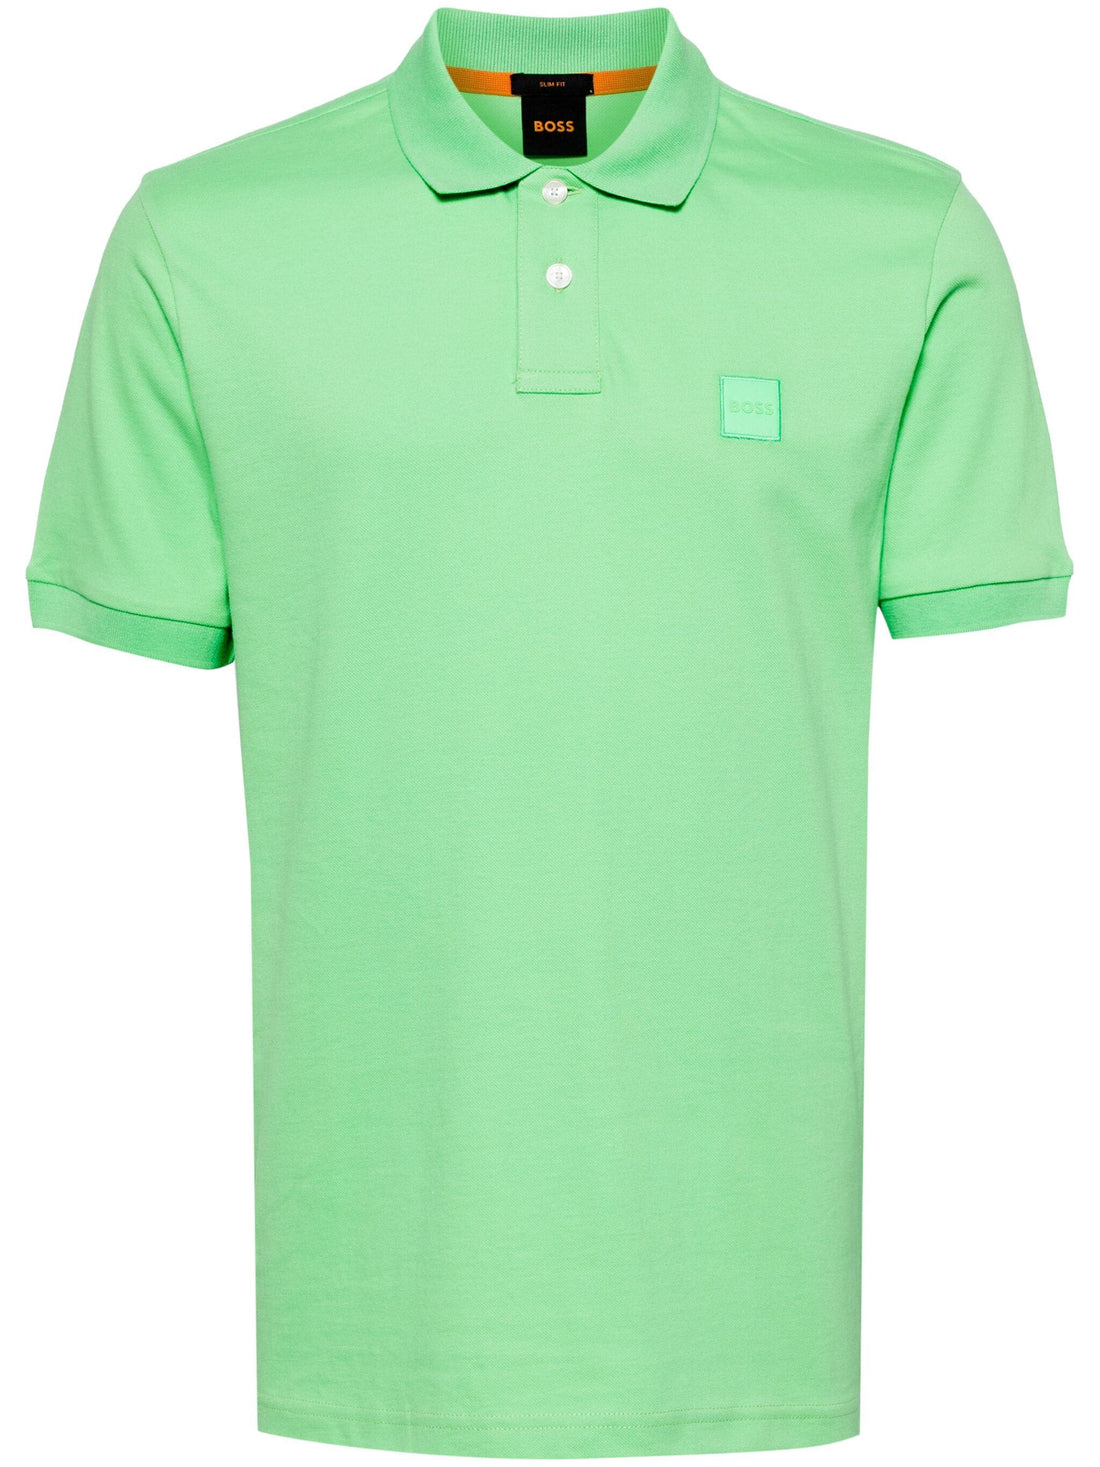 BOSS Passenger Logo Patch Pique Polo Shirt Bright Green - MAISONDEFASHION.COM